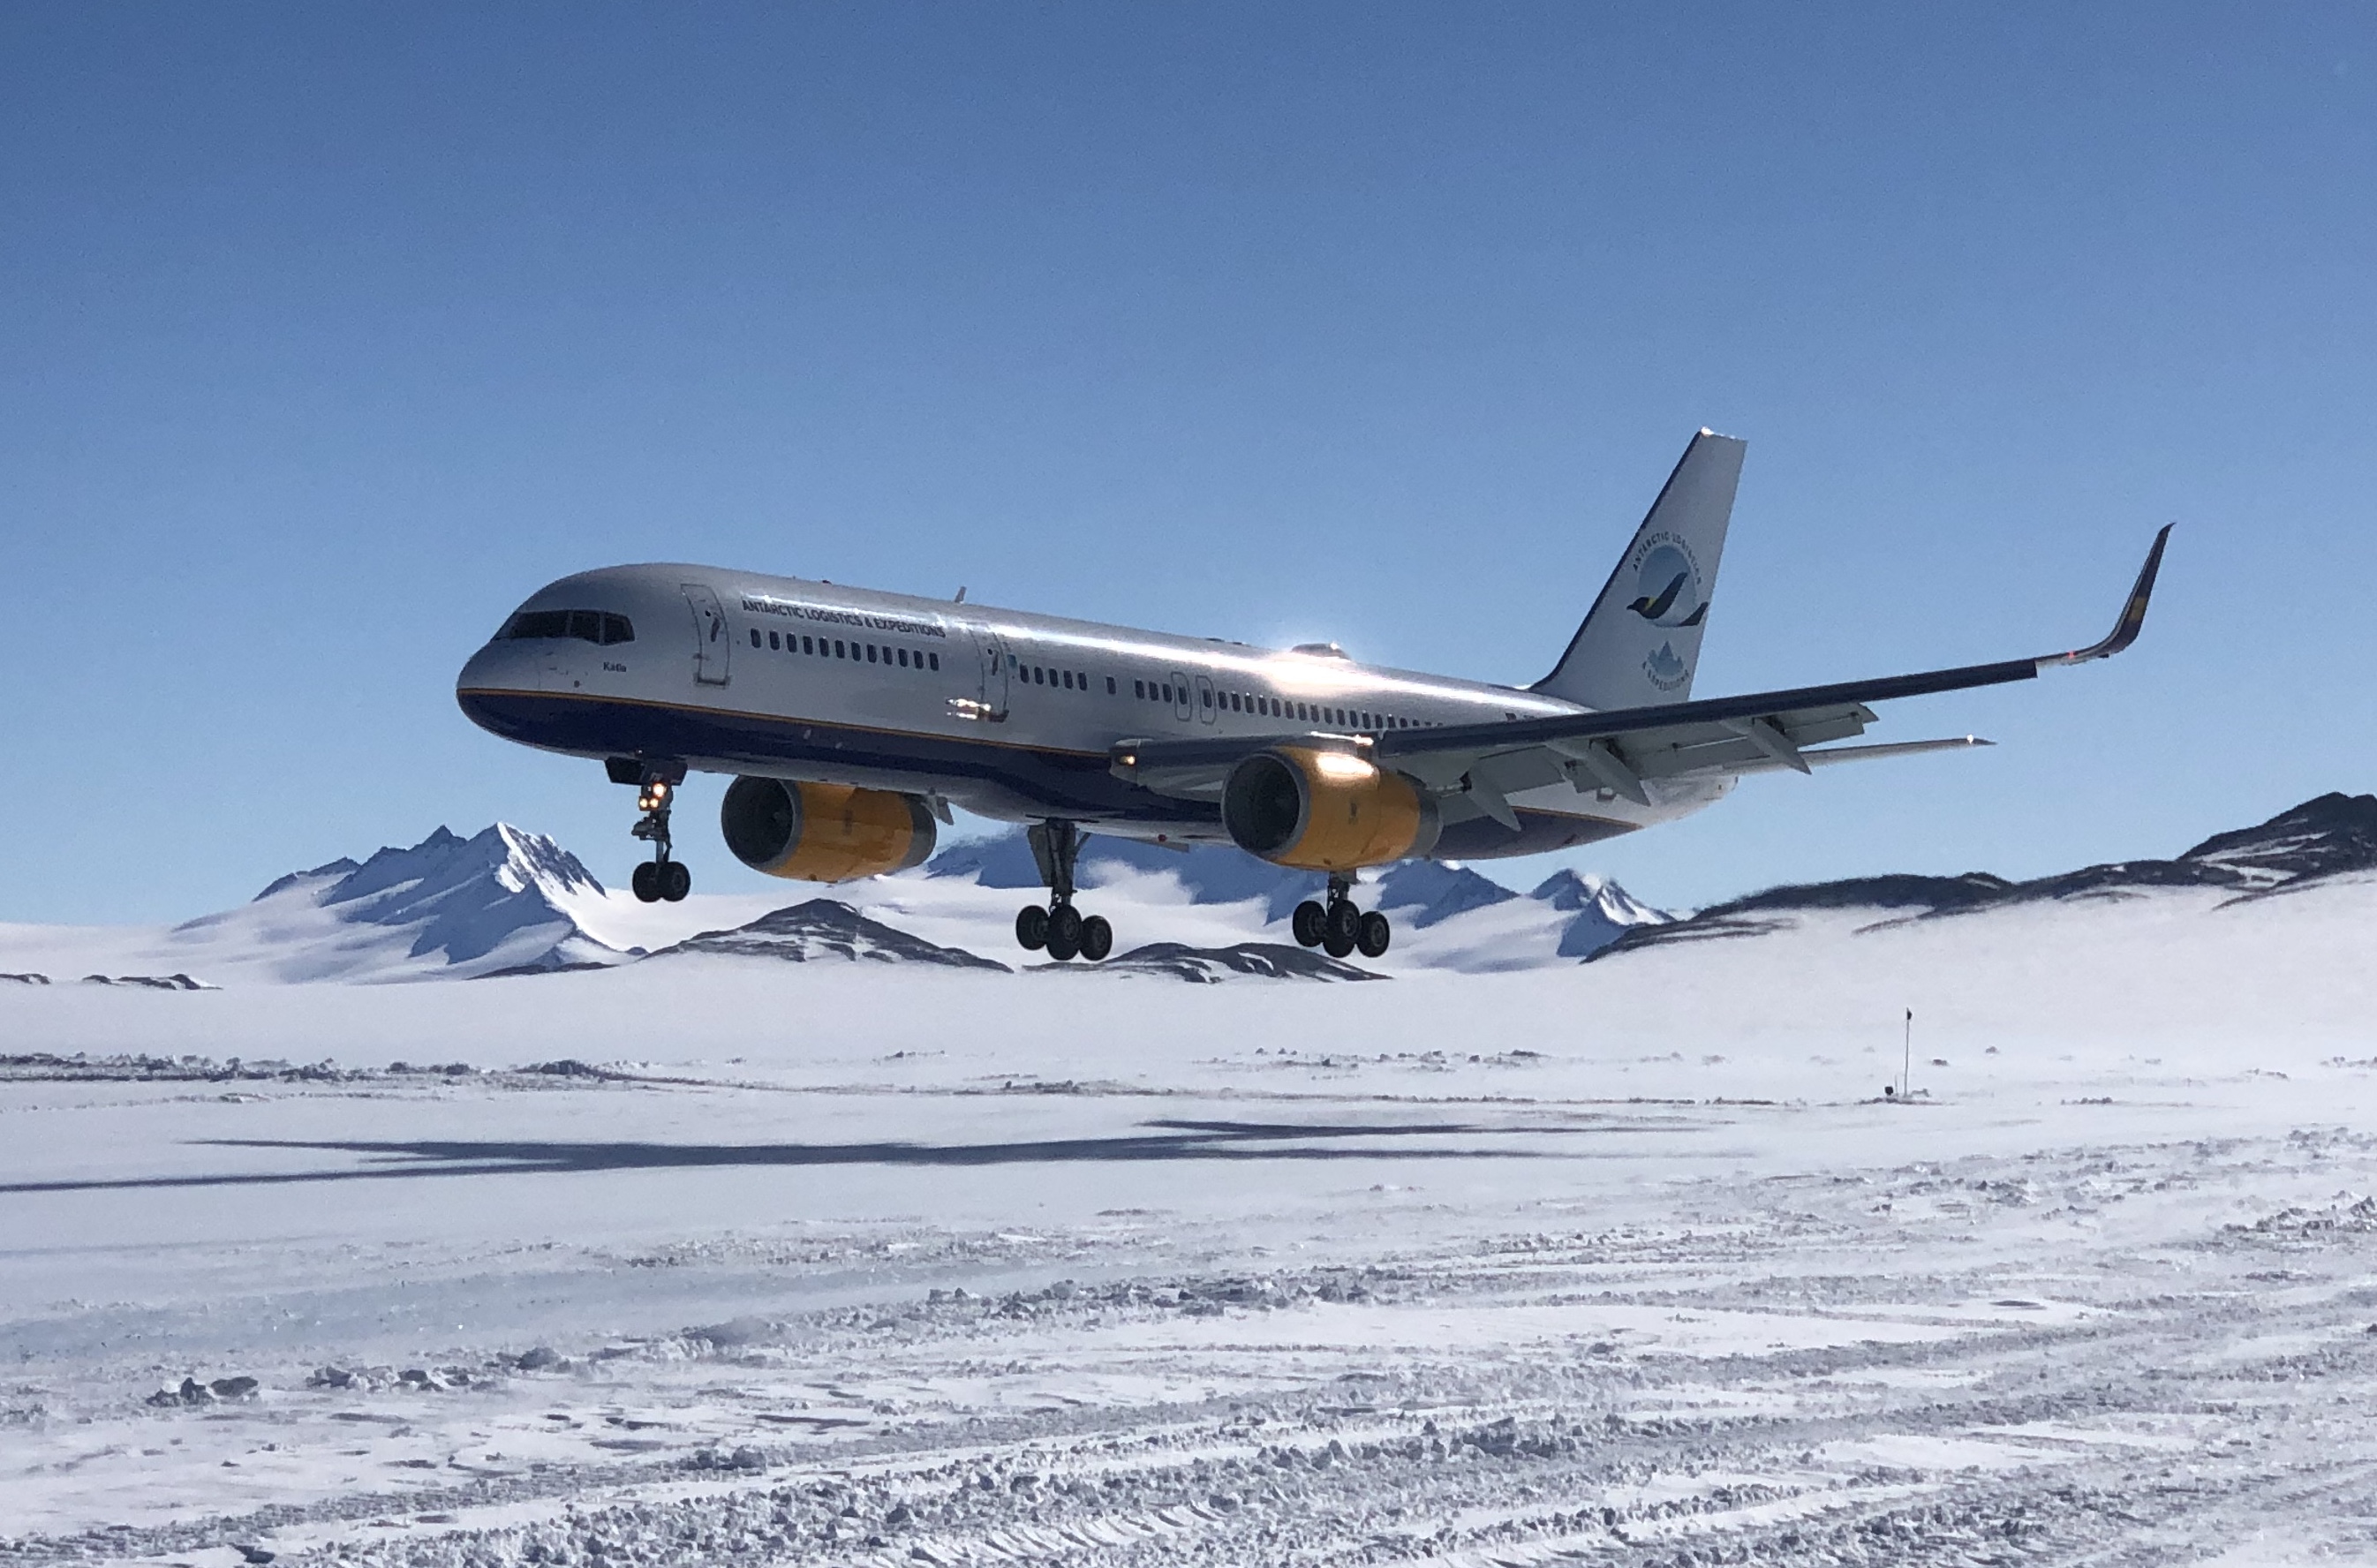 ALE's B757 passenger jet lands at Union Glacier, Antarctica